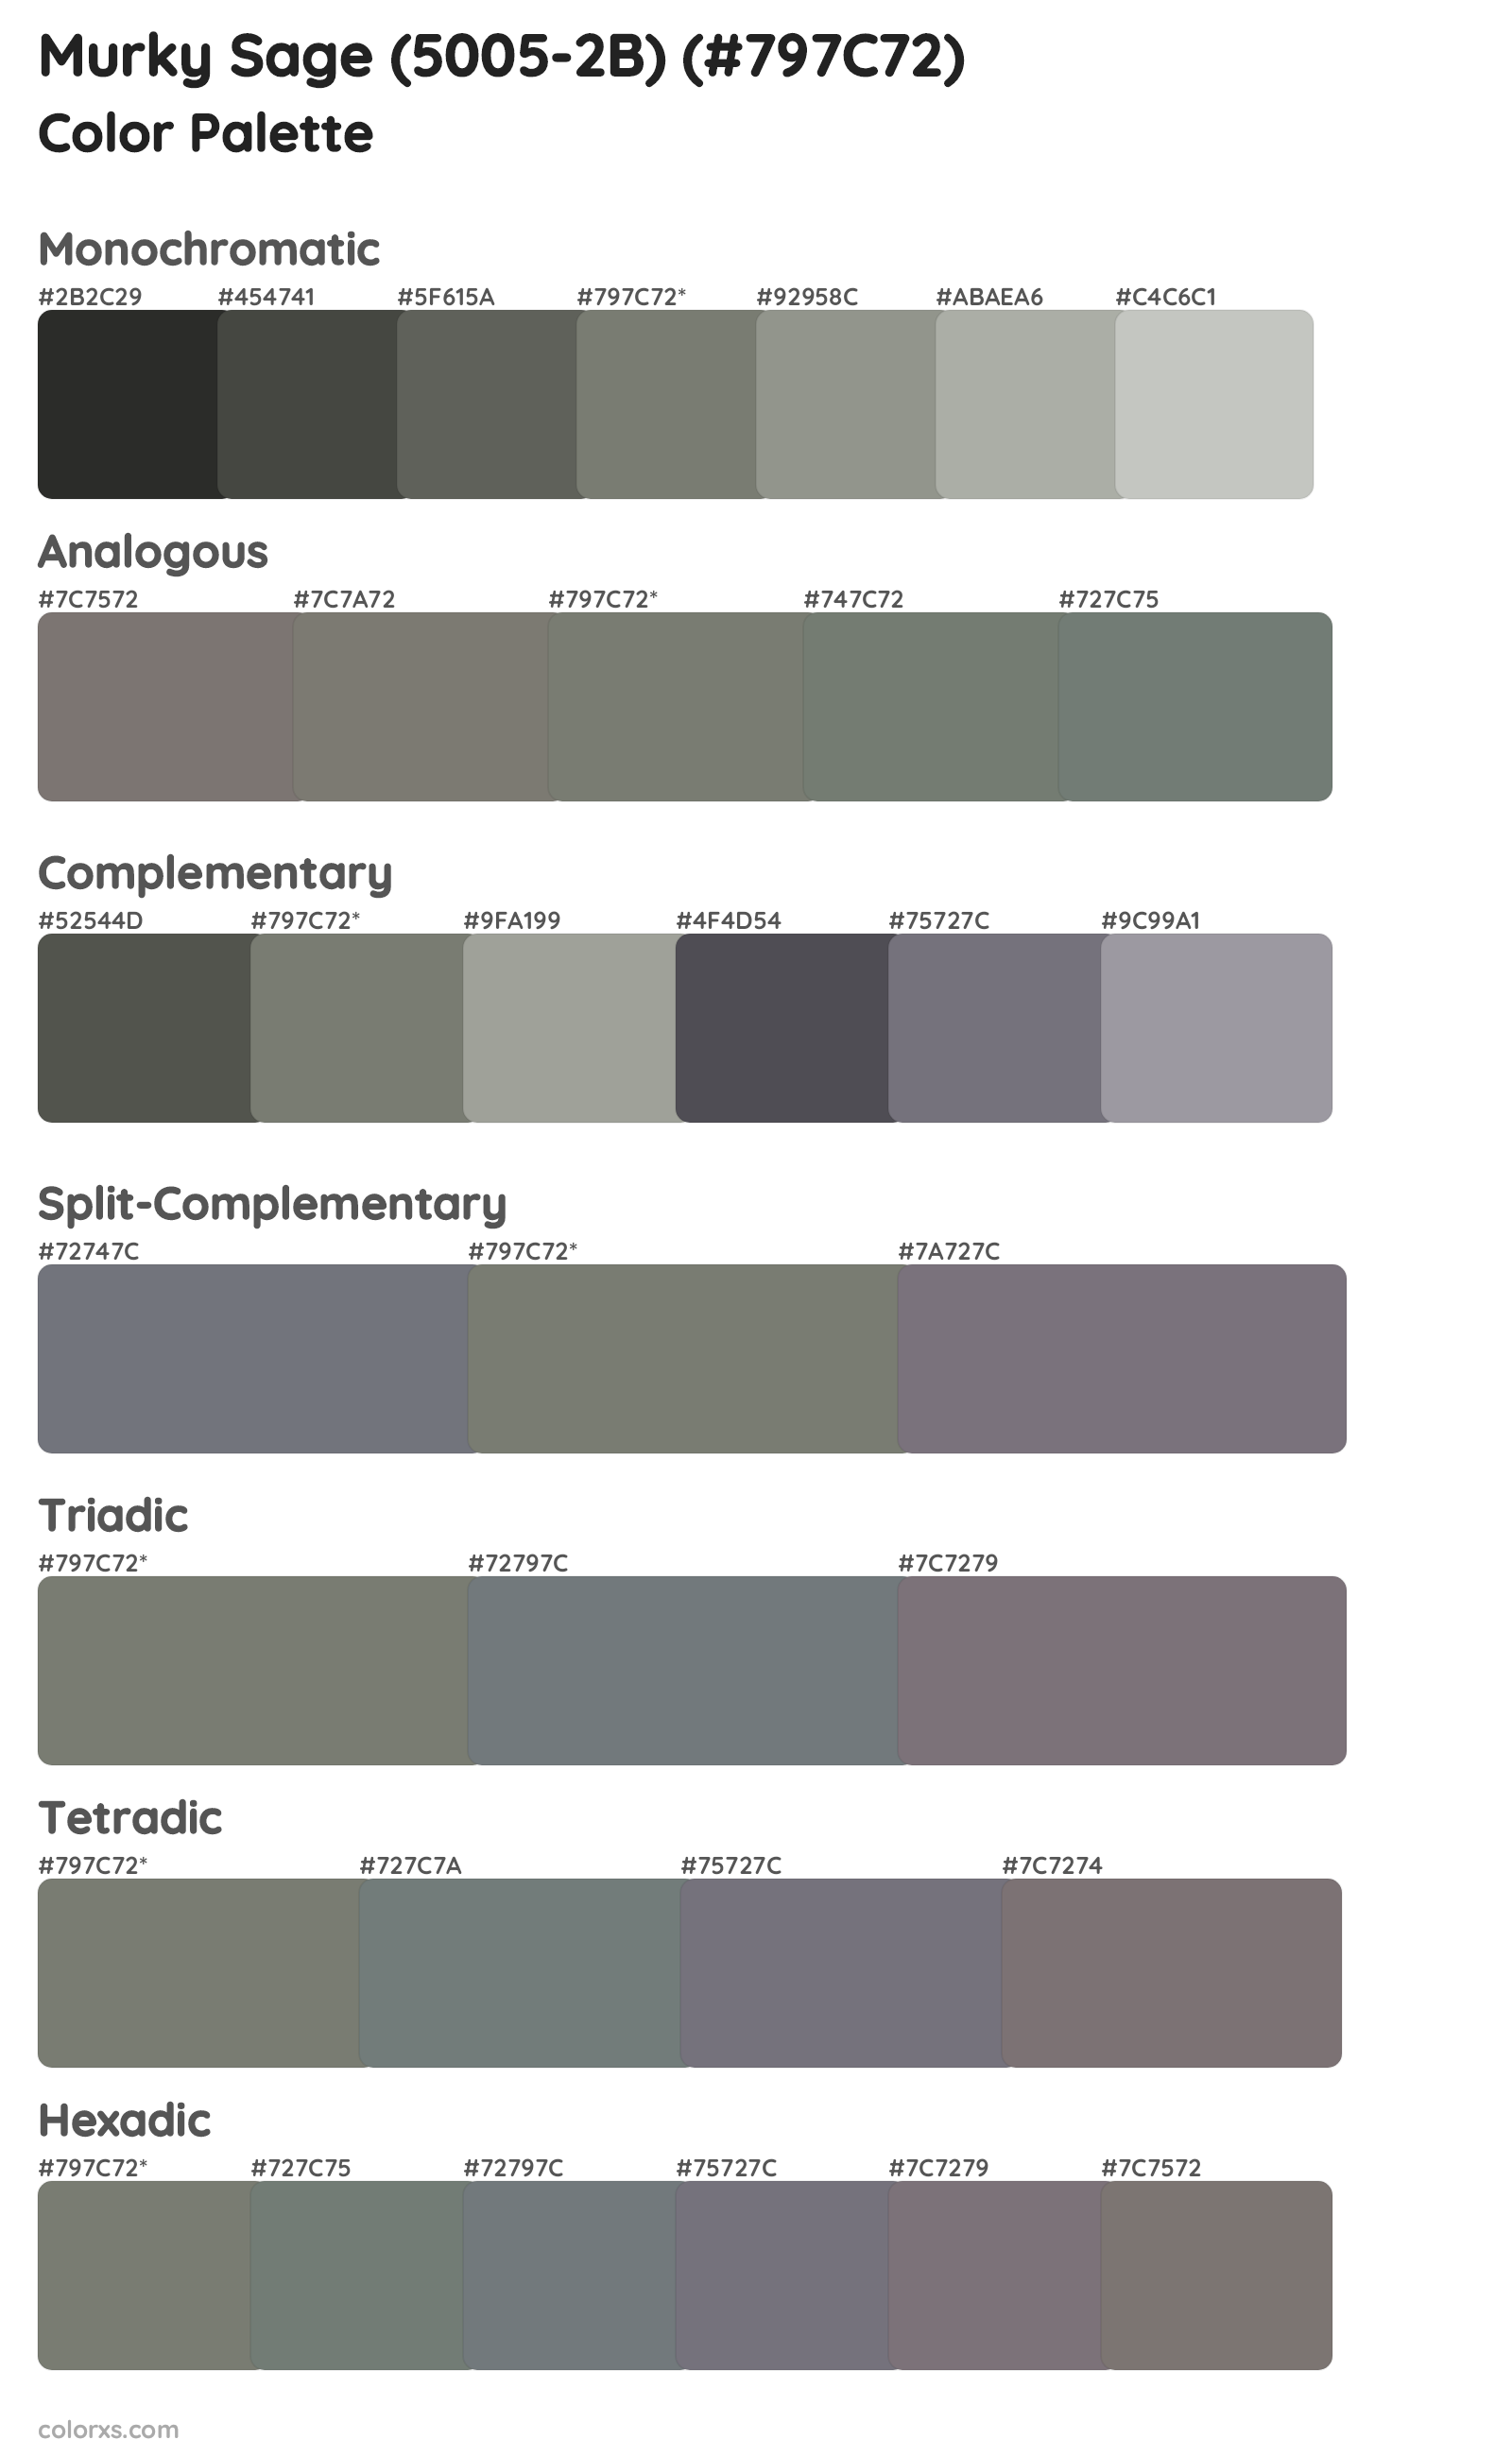 Murky Sage (5005-2B) Color Scheme Palettes